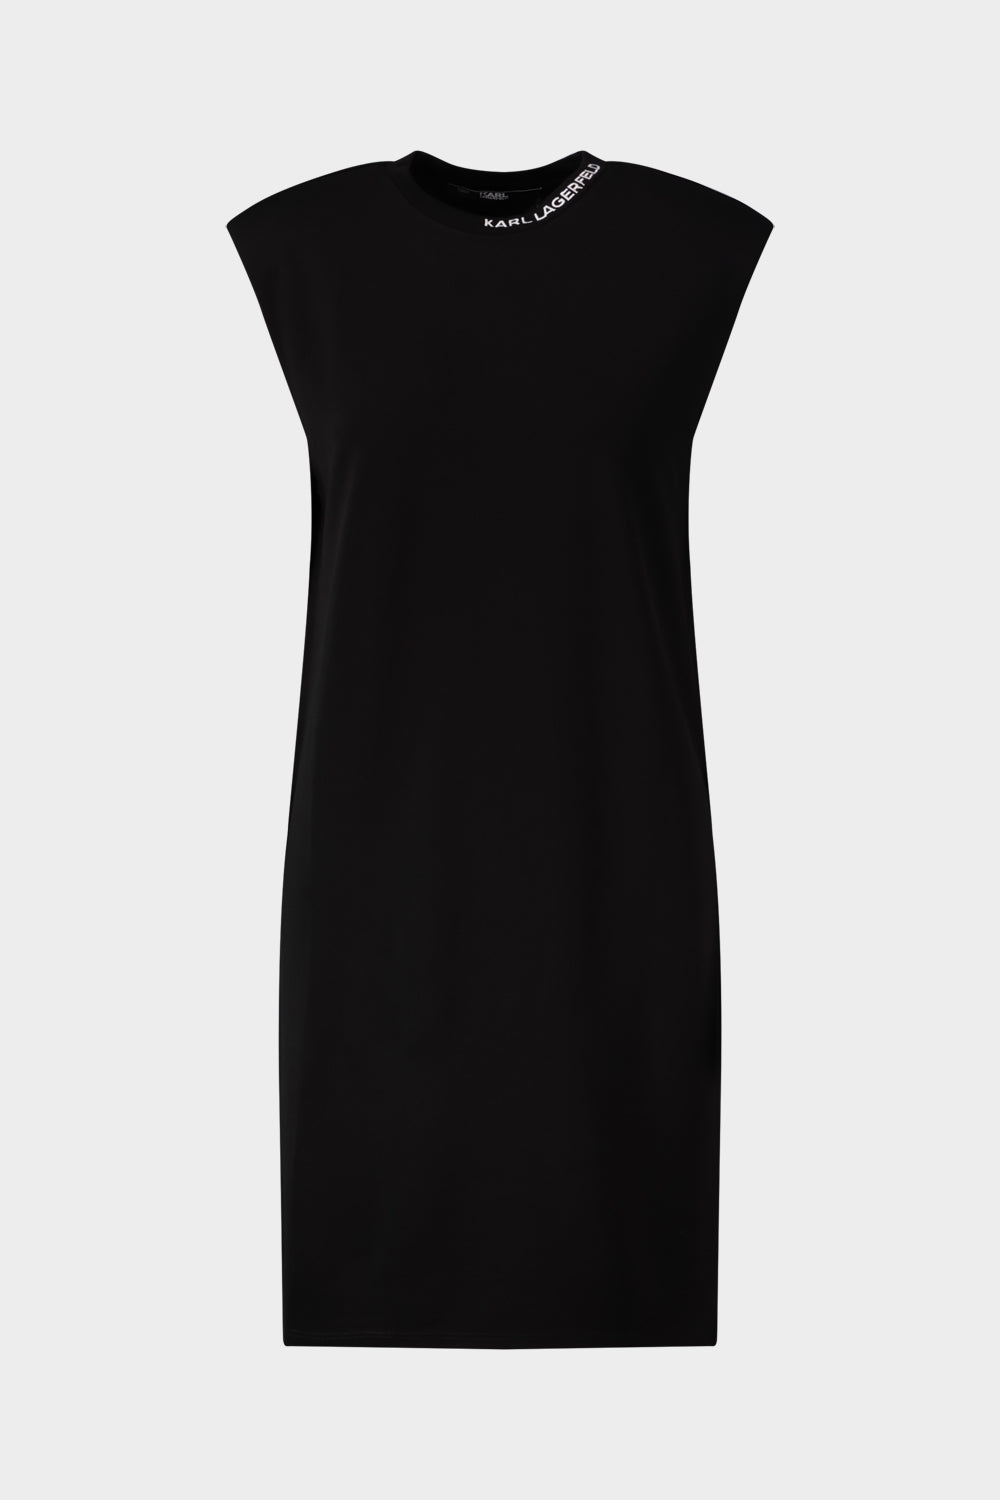 שמלת ג'רזי לנשים כריות כתפיים KARL LAGERFELD Vendome online | ונדום .